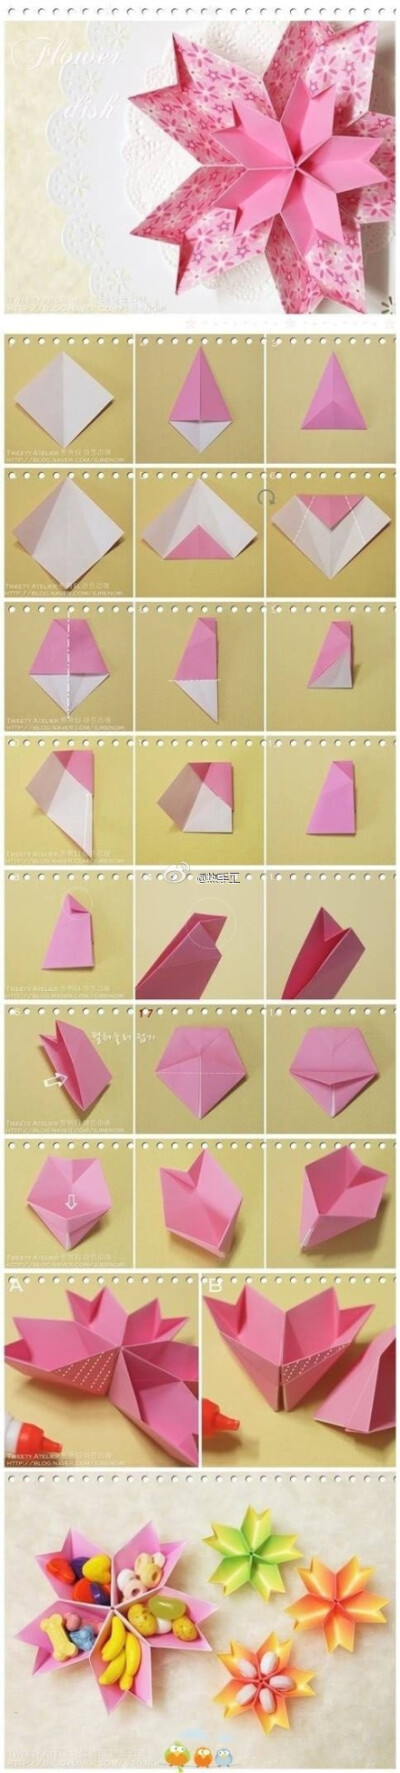 花朵纸艺 折纸 糖果盘 手工DIY 教程。可以装小东西、糖果的花朵纸艺、家居摆设，实用又美好。